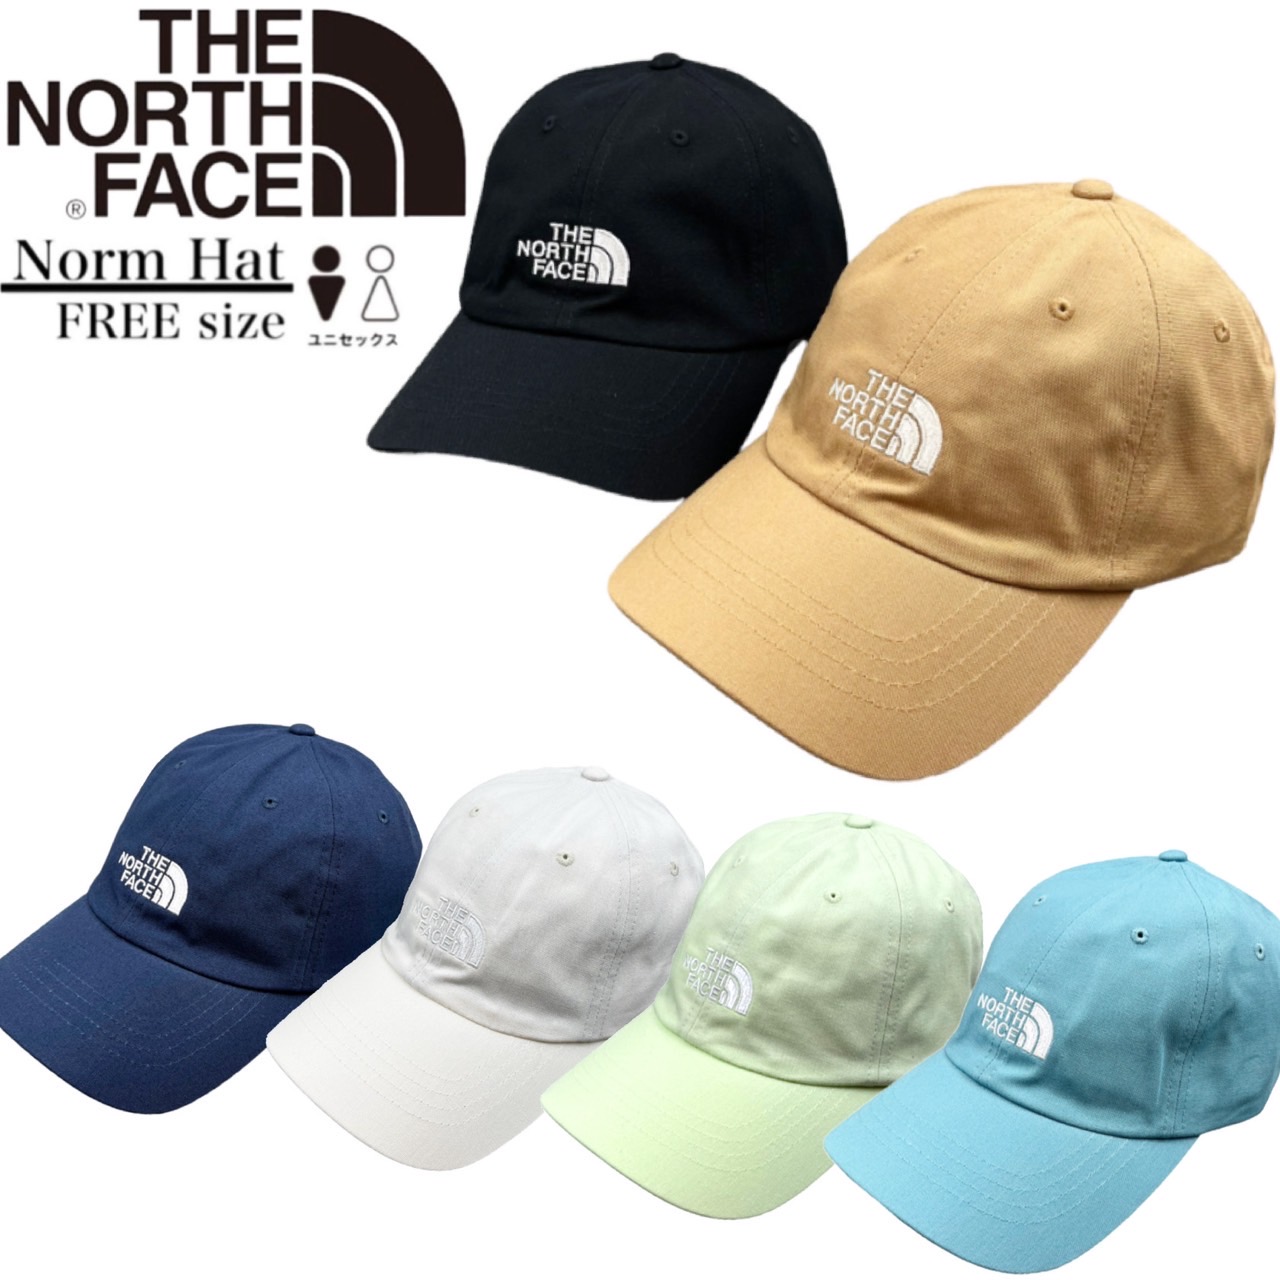 ザ ノースフェイス The North Face ノーム ハット キャップ 帽子 ワンサイズ NF0A3SH3 ユニセックス メンズ レディース  THE NORTH FACE NORM CAP :NORMCAP:STY1 通販 